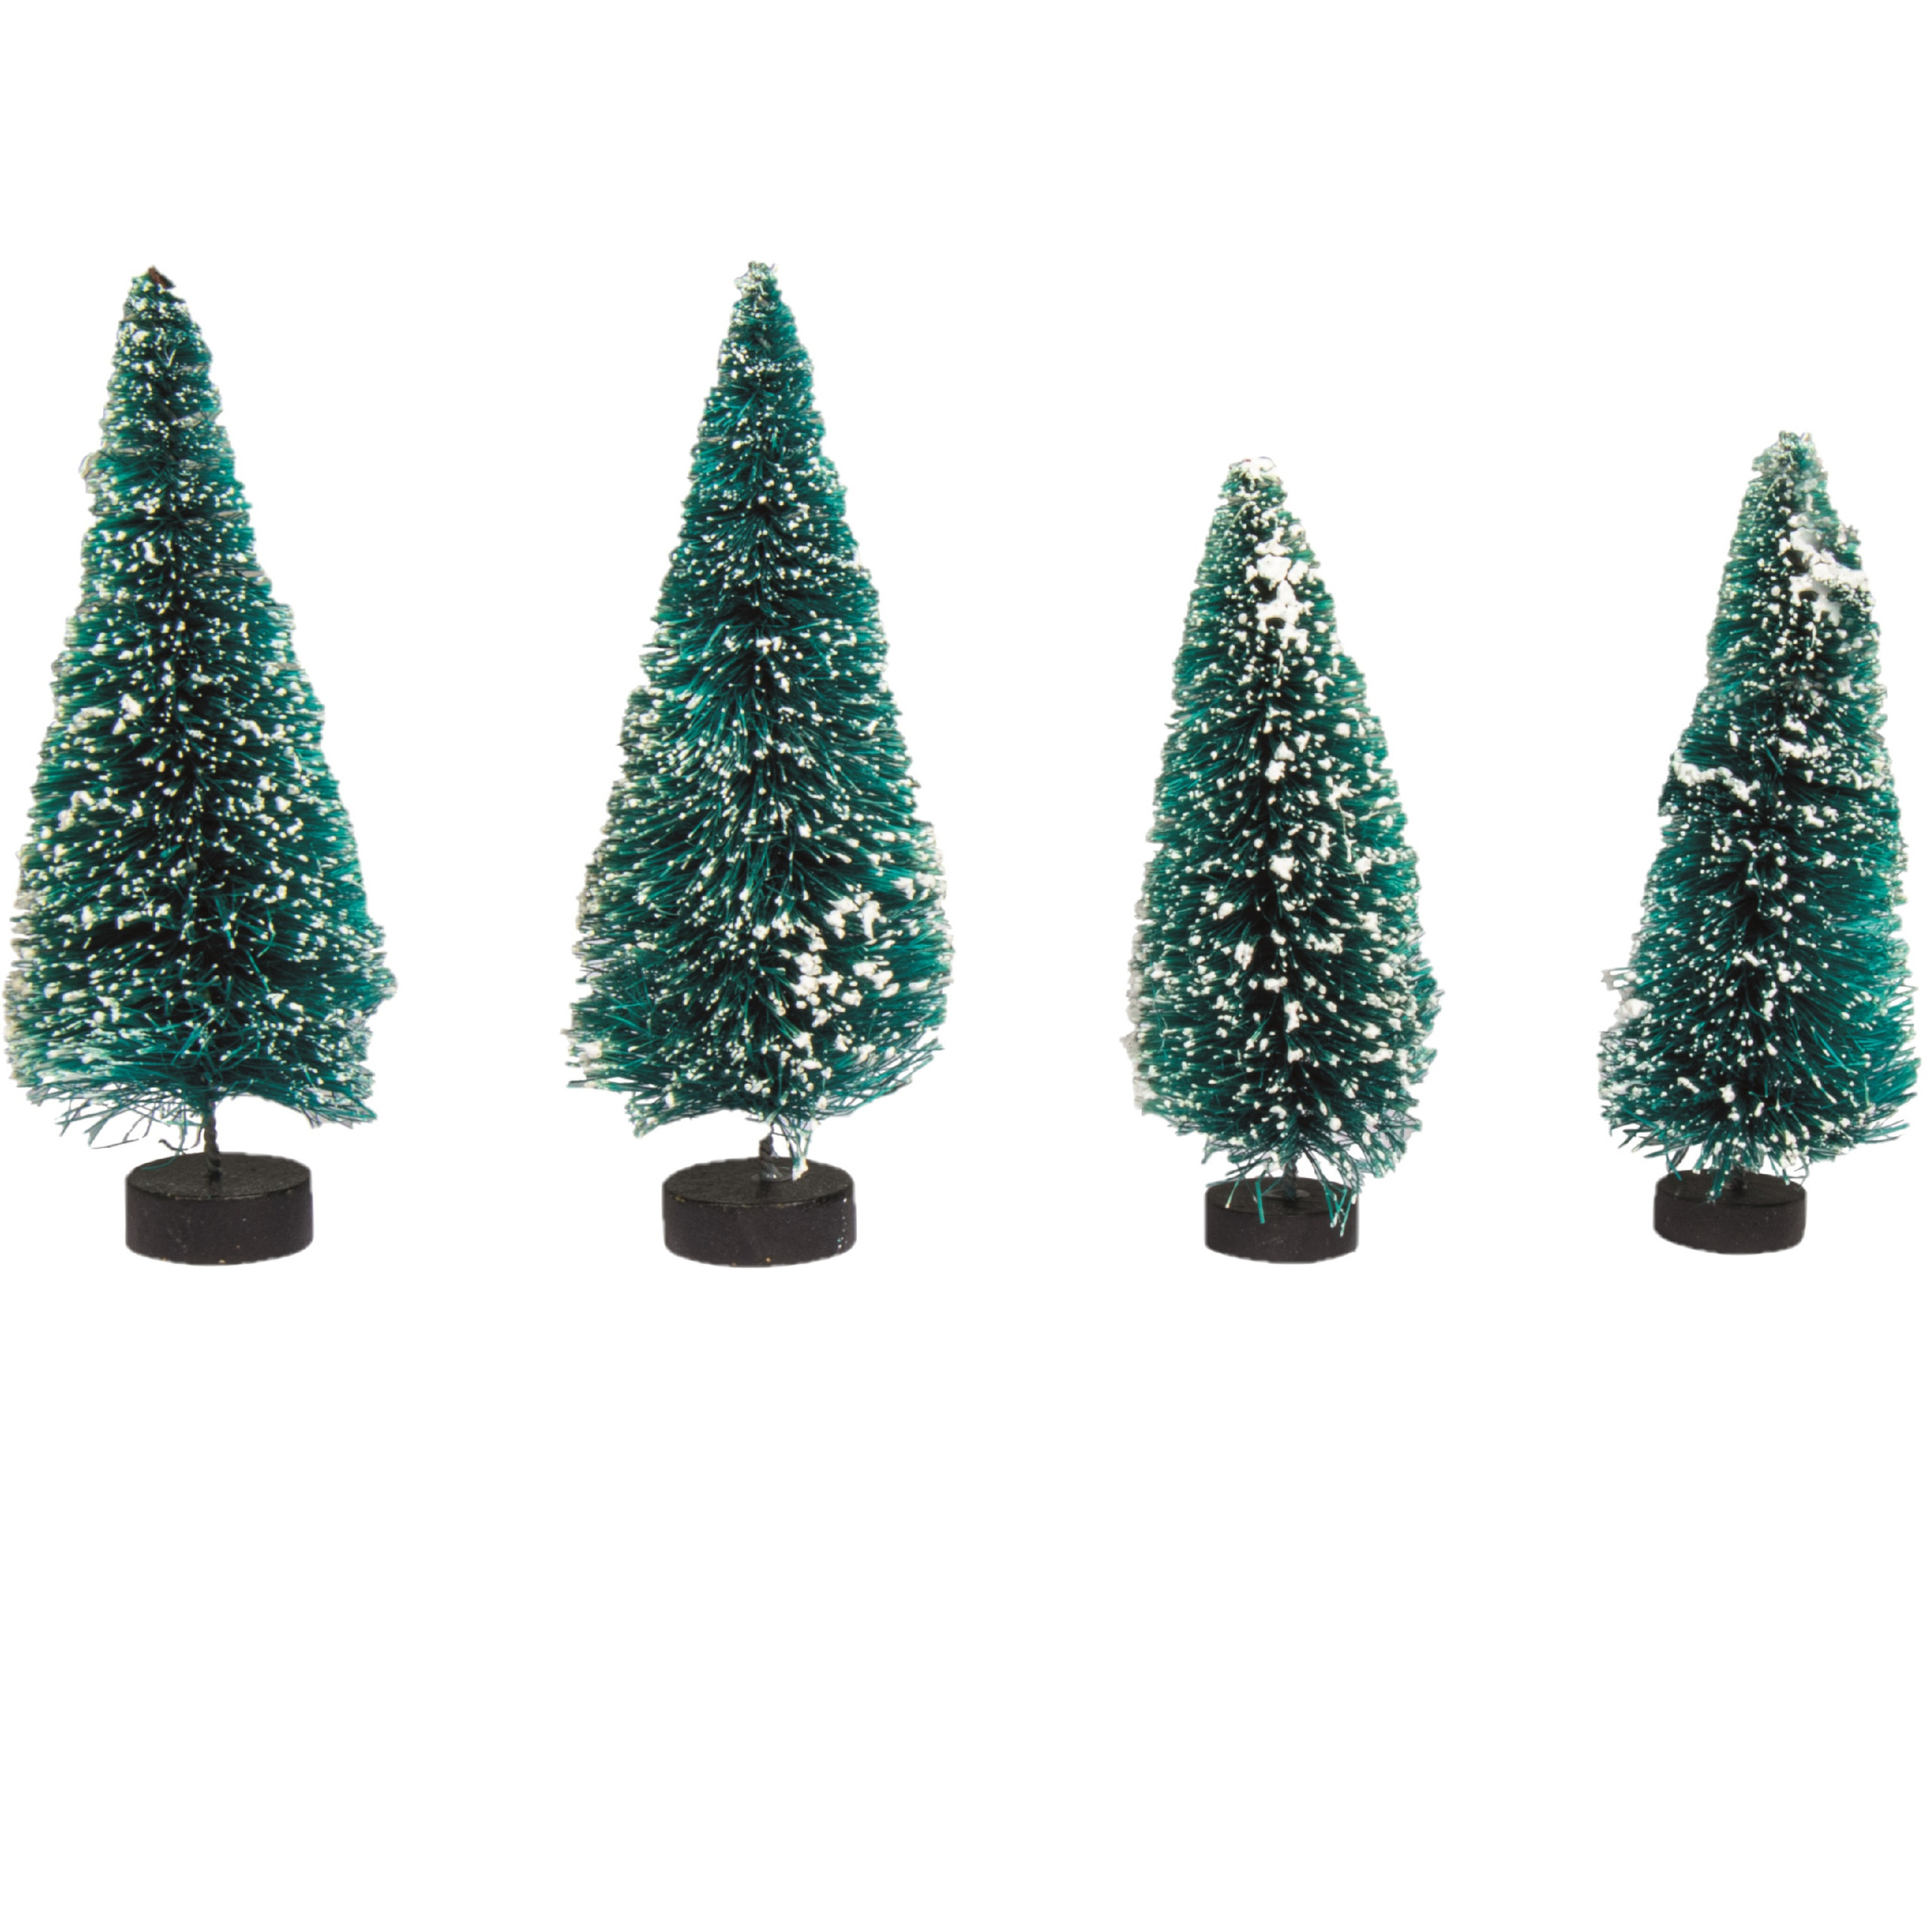 Kerstdorp boompjes-kerstboompjes 4x st 9 en 12 cm -besneeuwd miniatuur